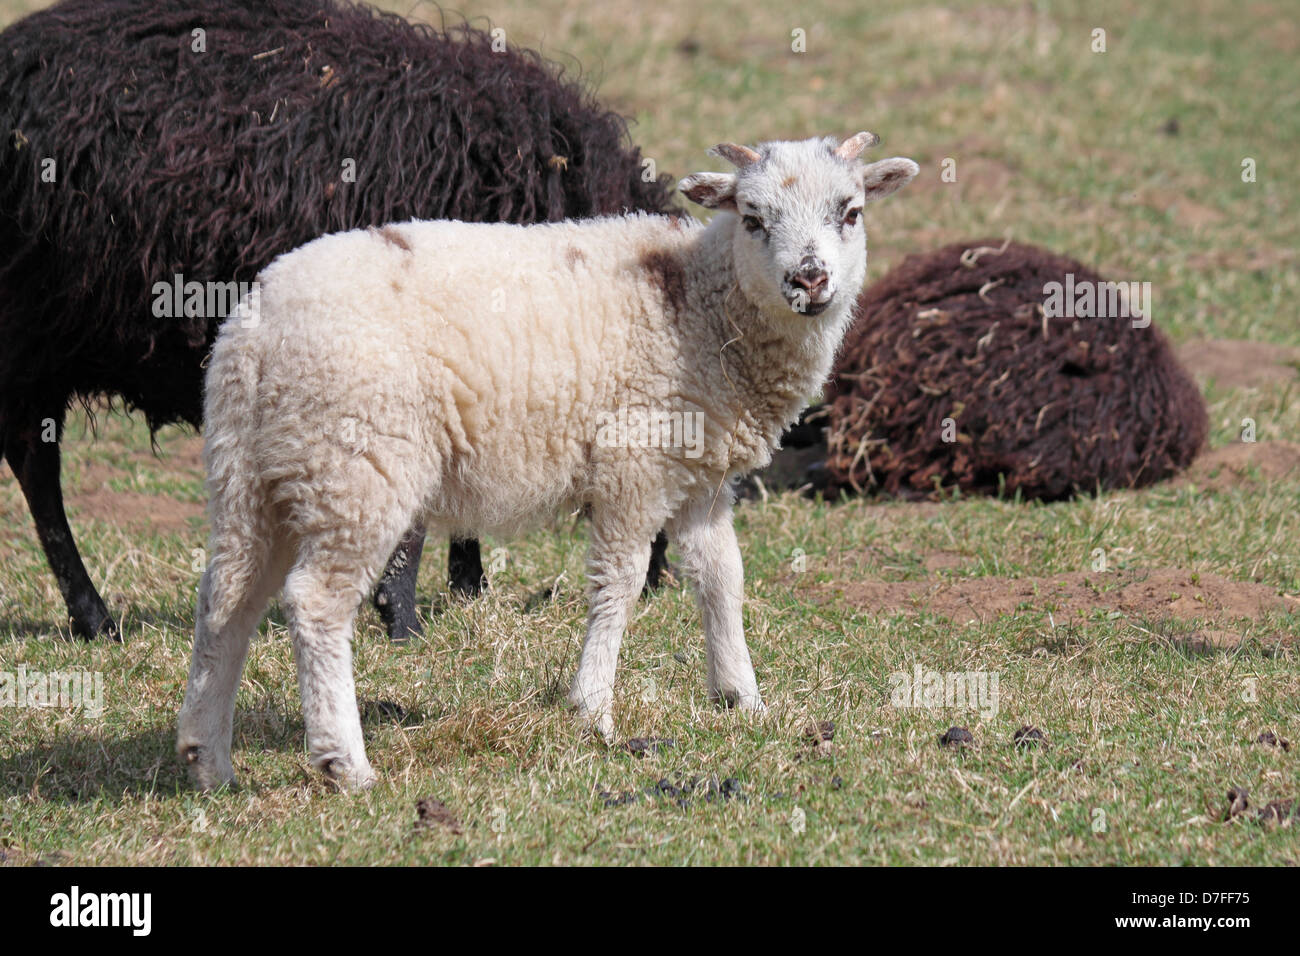 Hebridean Sheep and Lamb at Denaby Ings Stock Photo